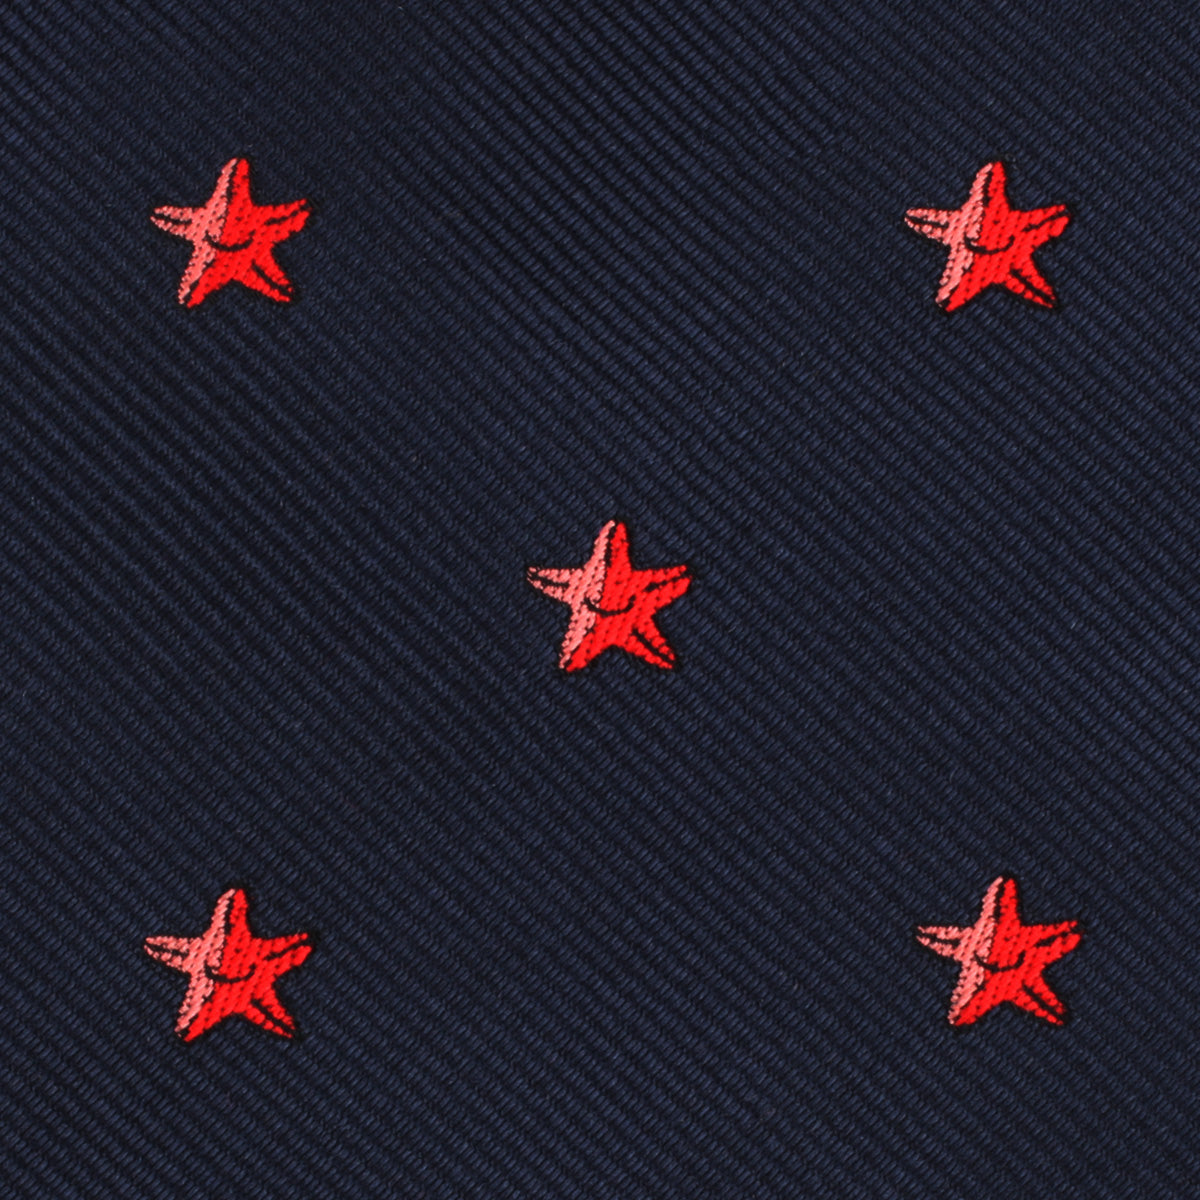 Starfish Skinny Tie Fabric